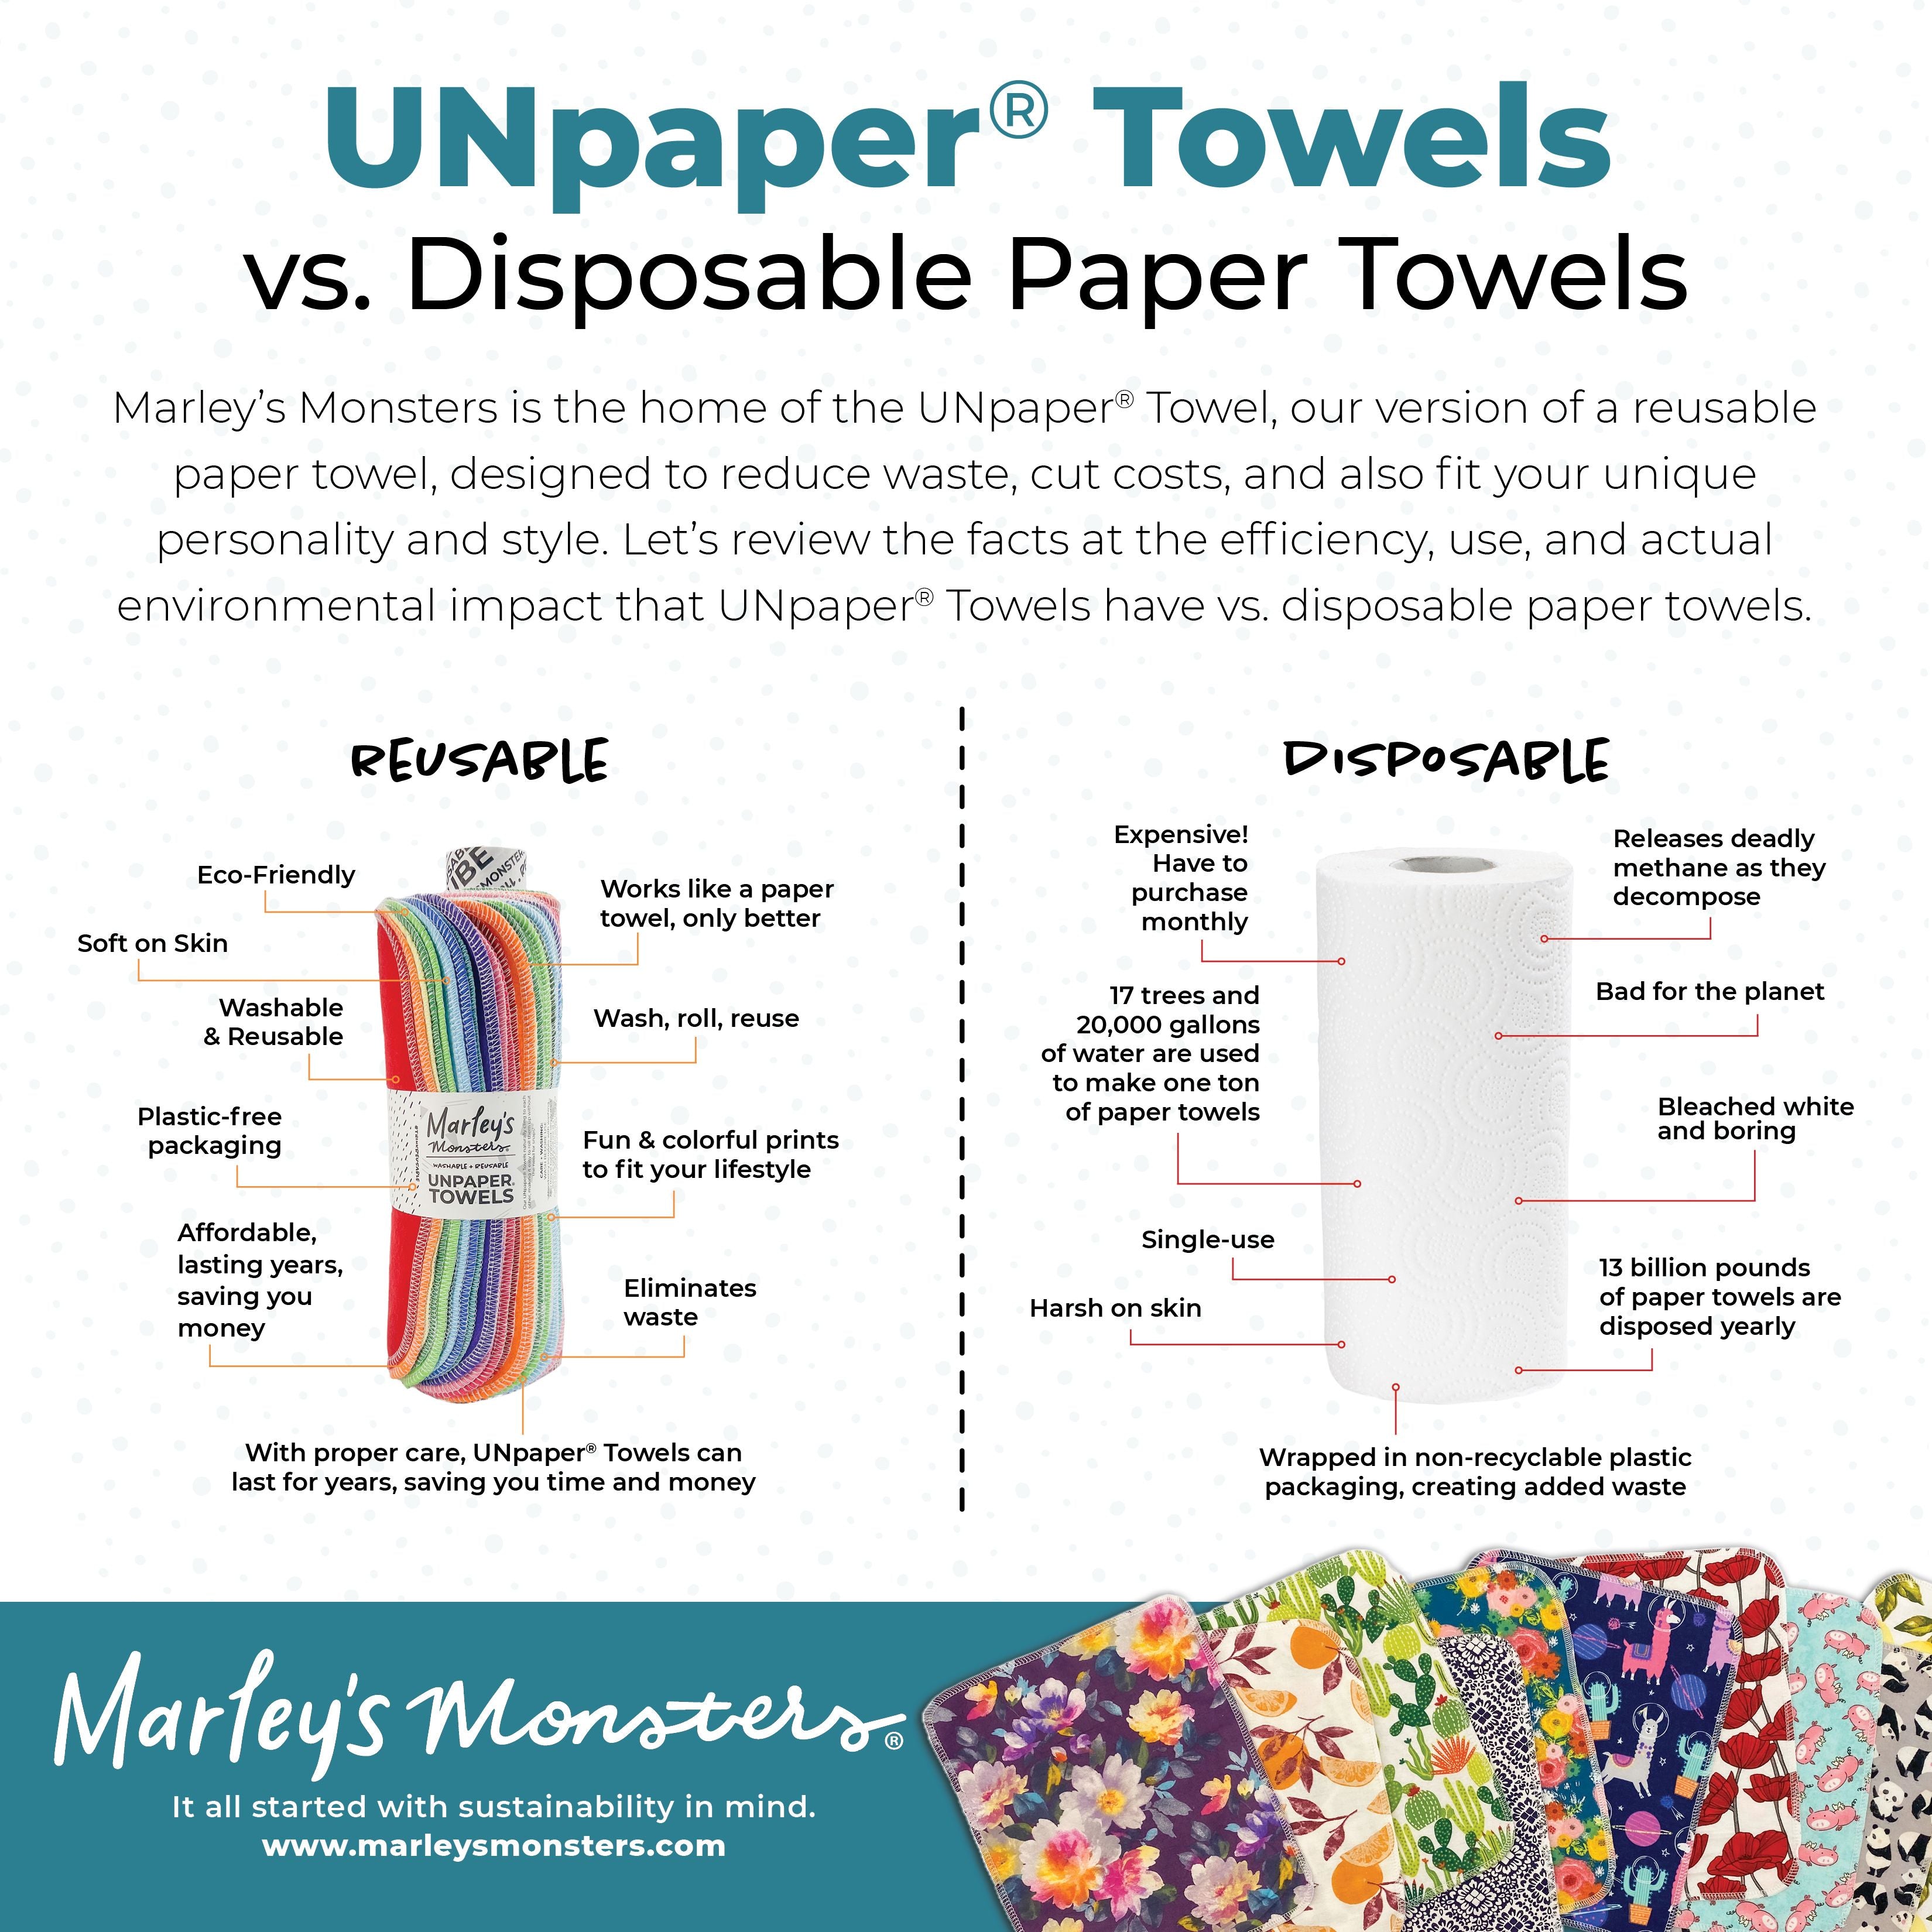 UNpaper® Towels Refill Pack: Prints